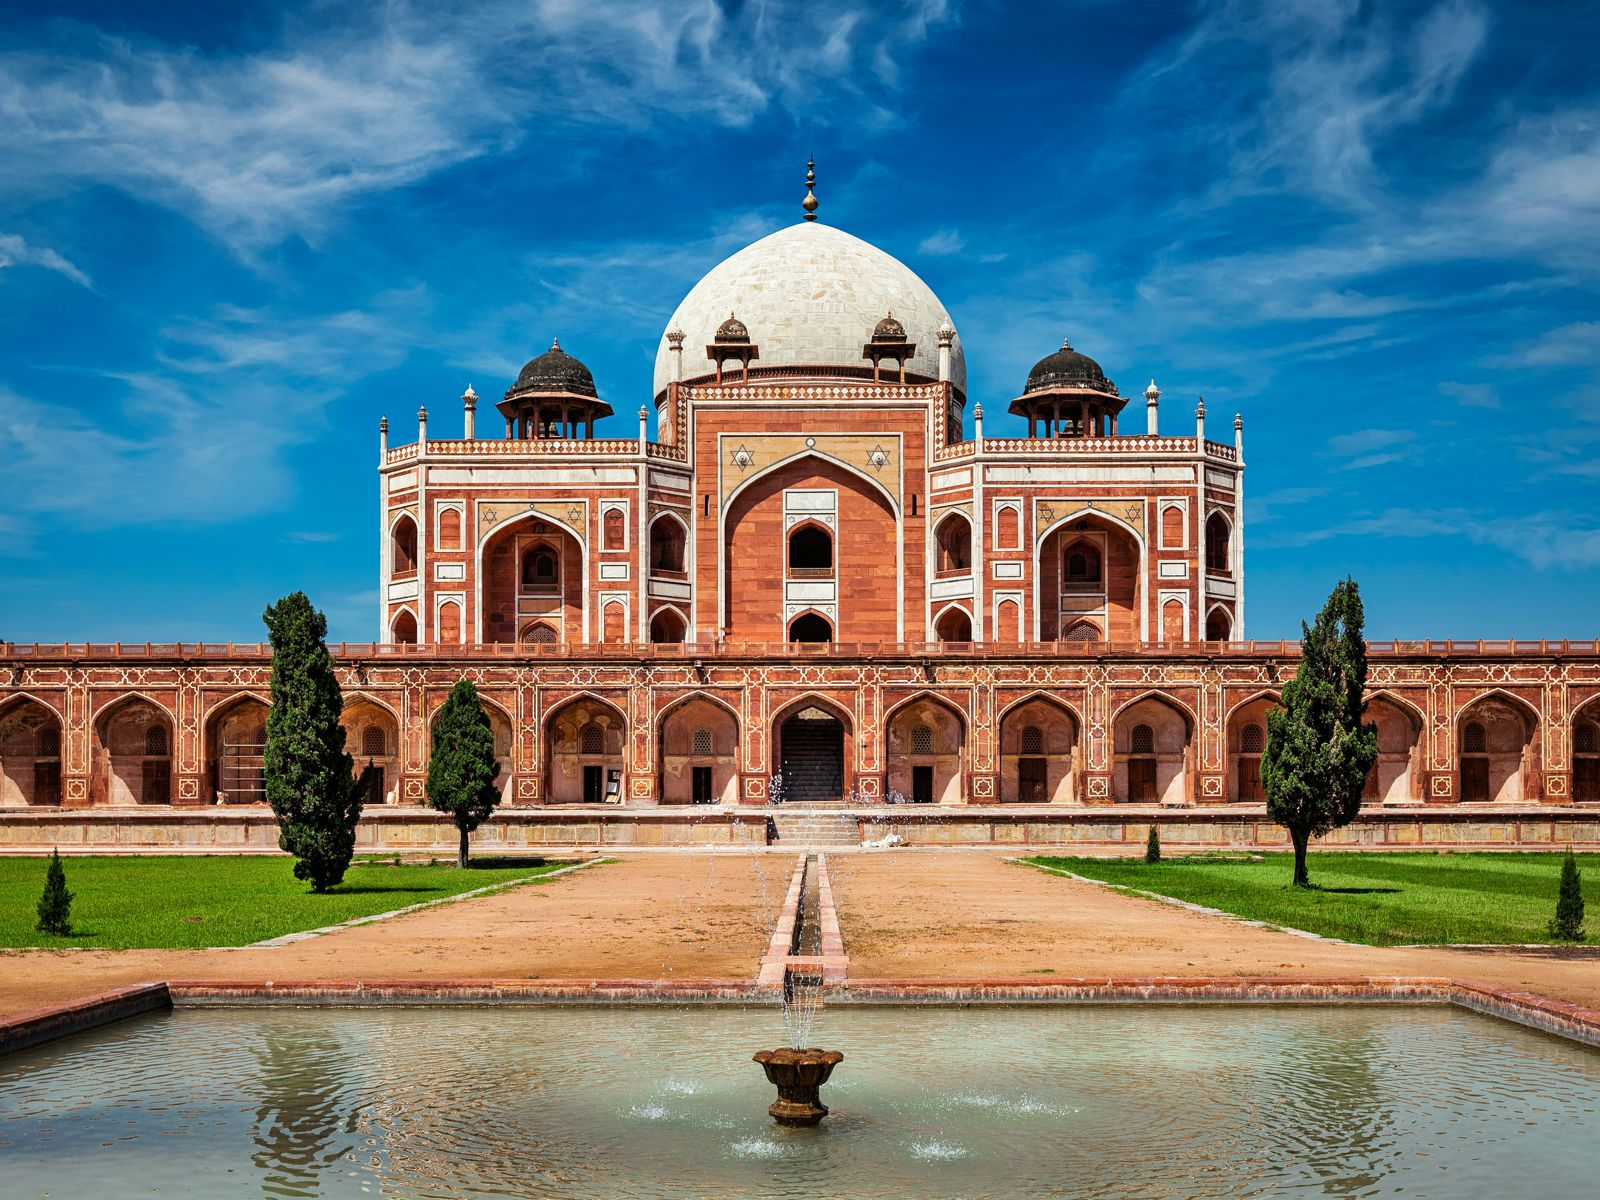 Tur til Delhi - Humayuns mausoleum i Delhi, Indien, en storslået rød sandsten og marmorstruktur under en klar blå himmel.